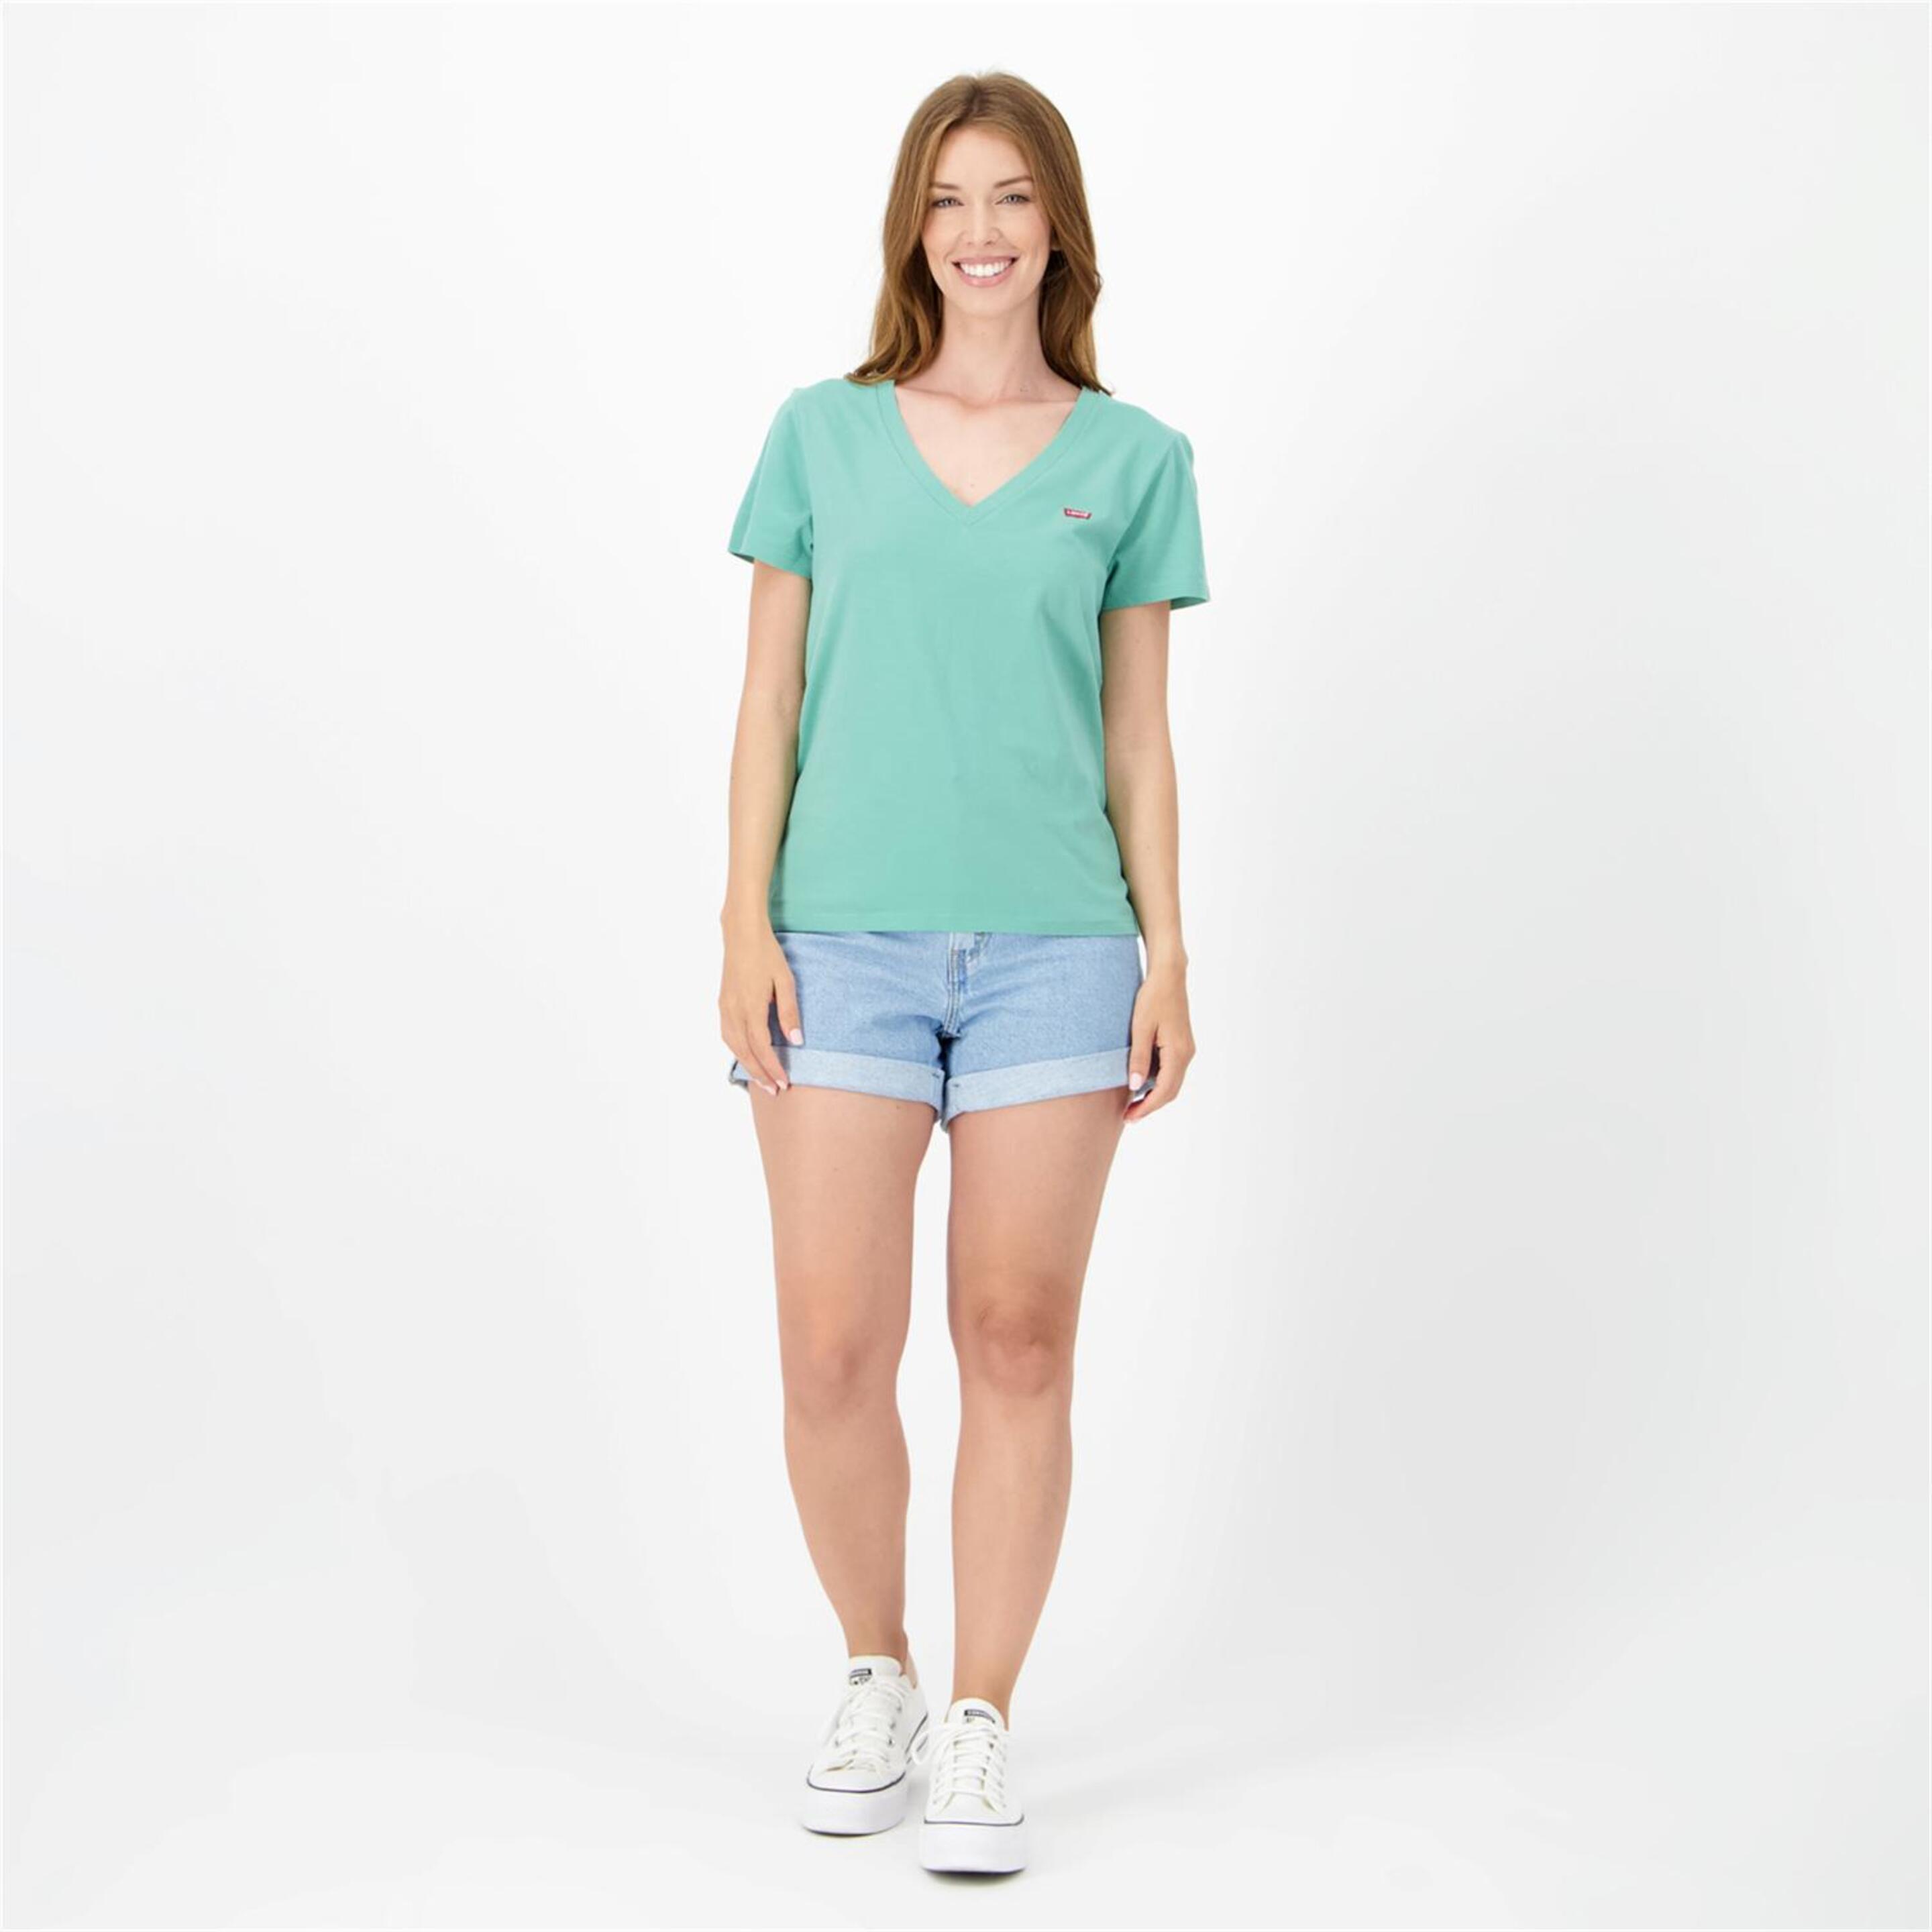 Camiseta Levi's - Verde - Camiseta Cuello Pico Mujer